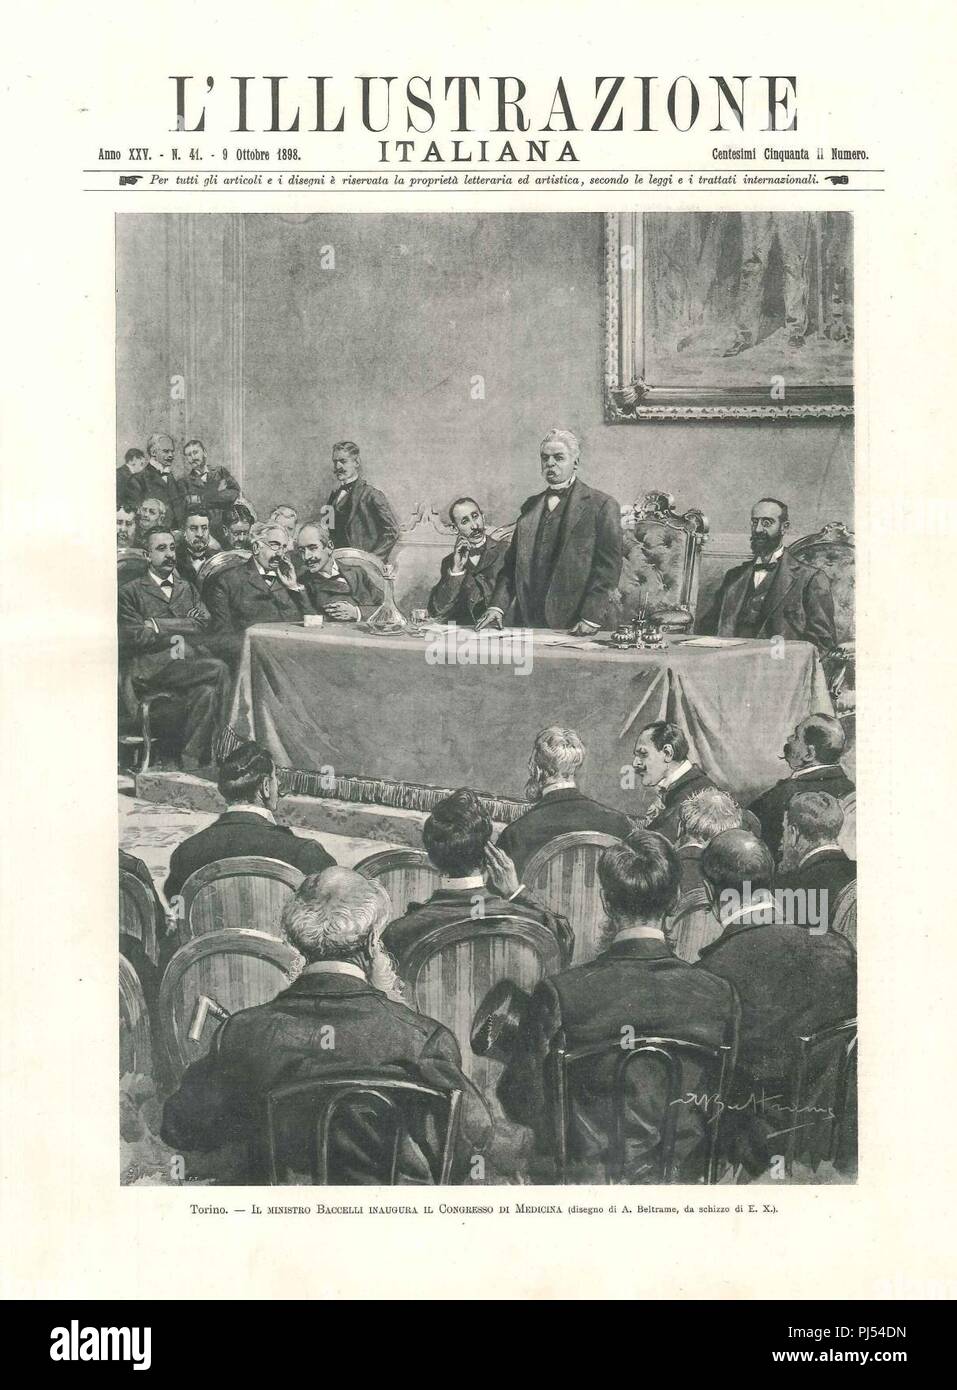 Baccelli inaugura il Congresso di Medicina di Torino, L'Illustrazione italiana, 1898. Stockfoto